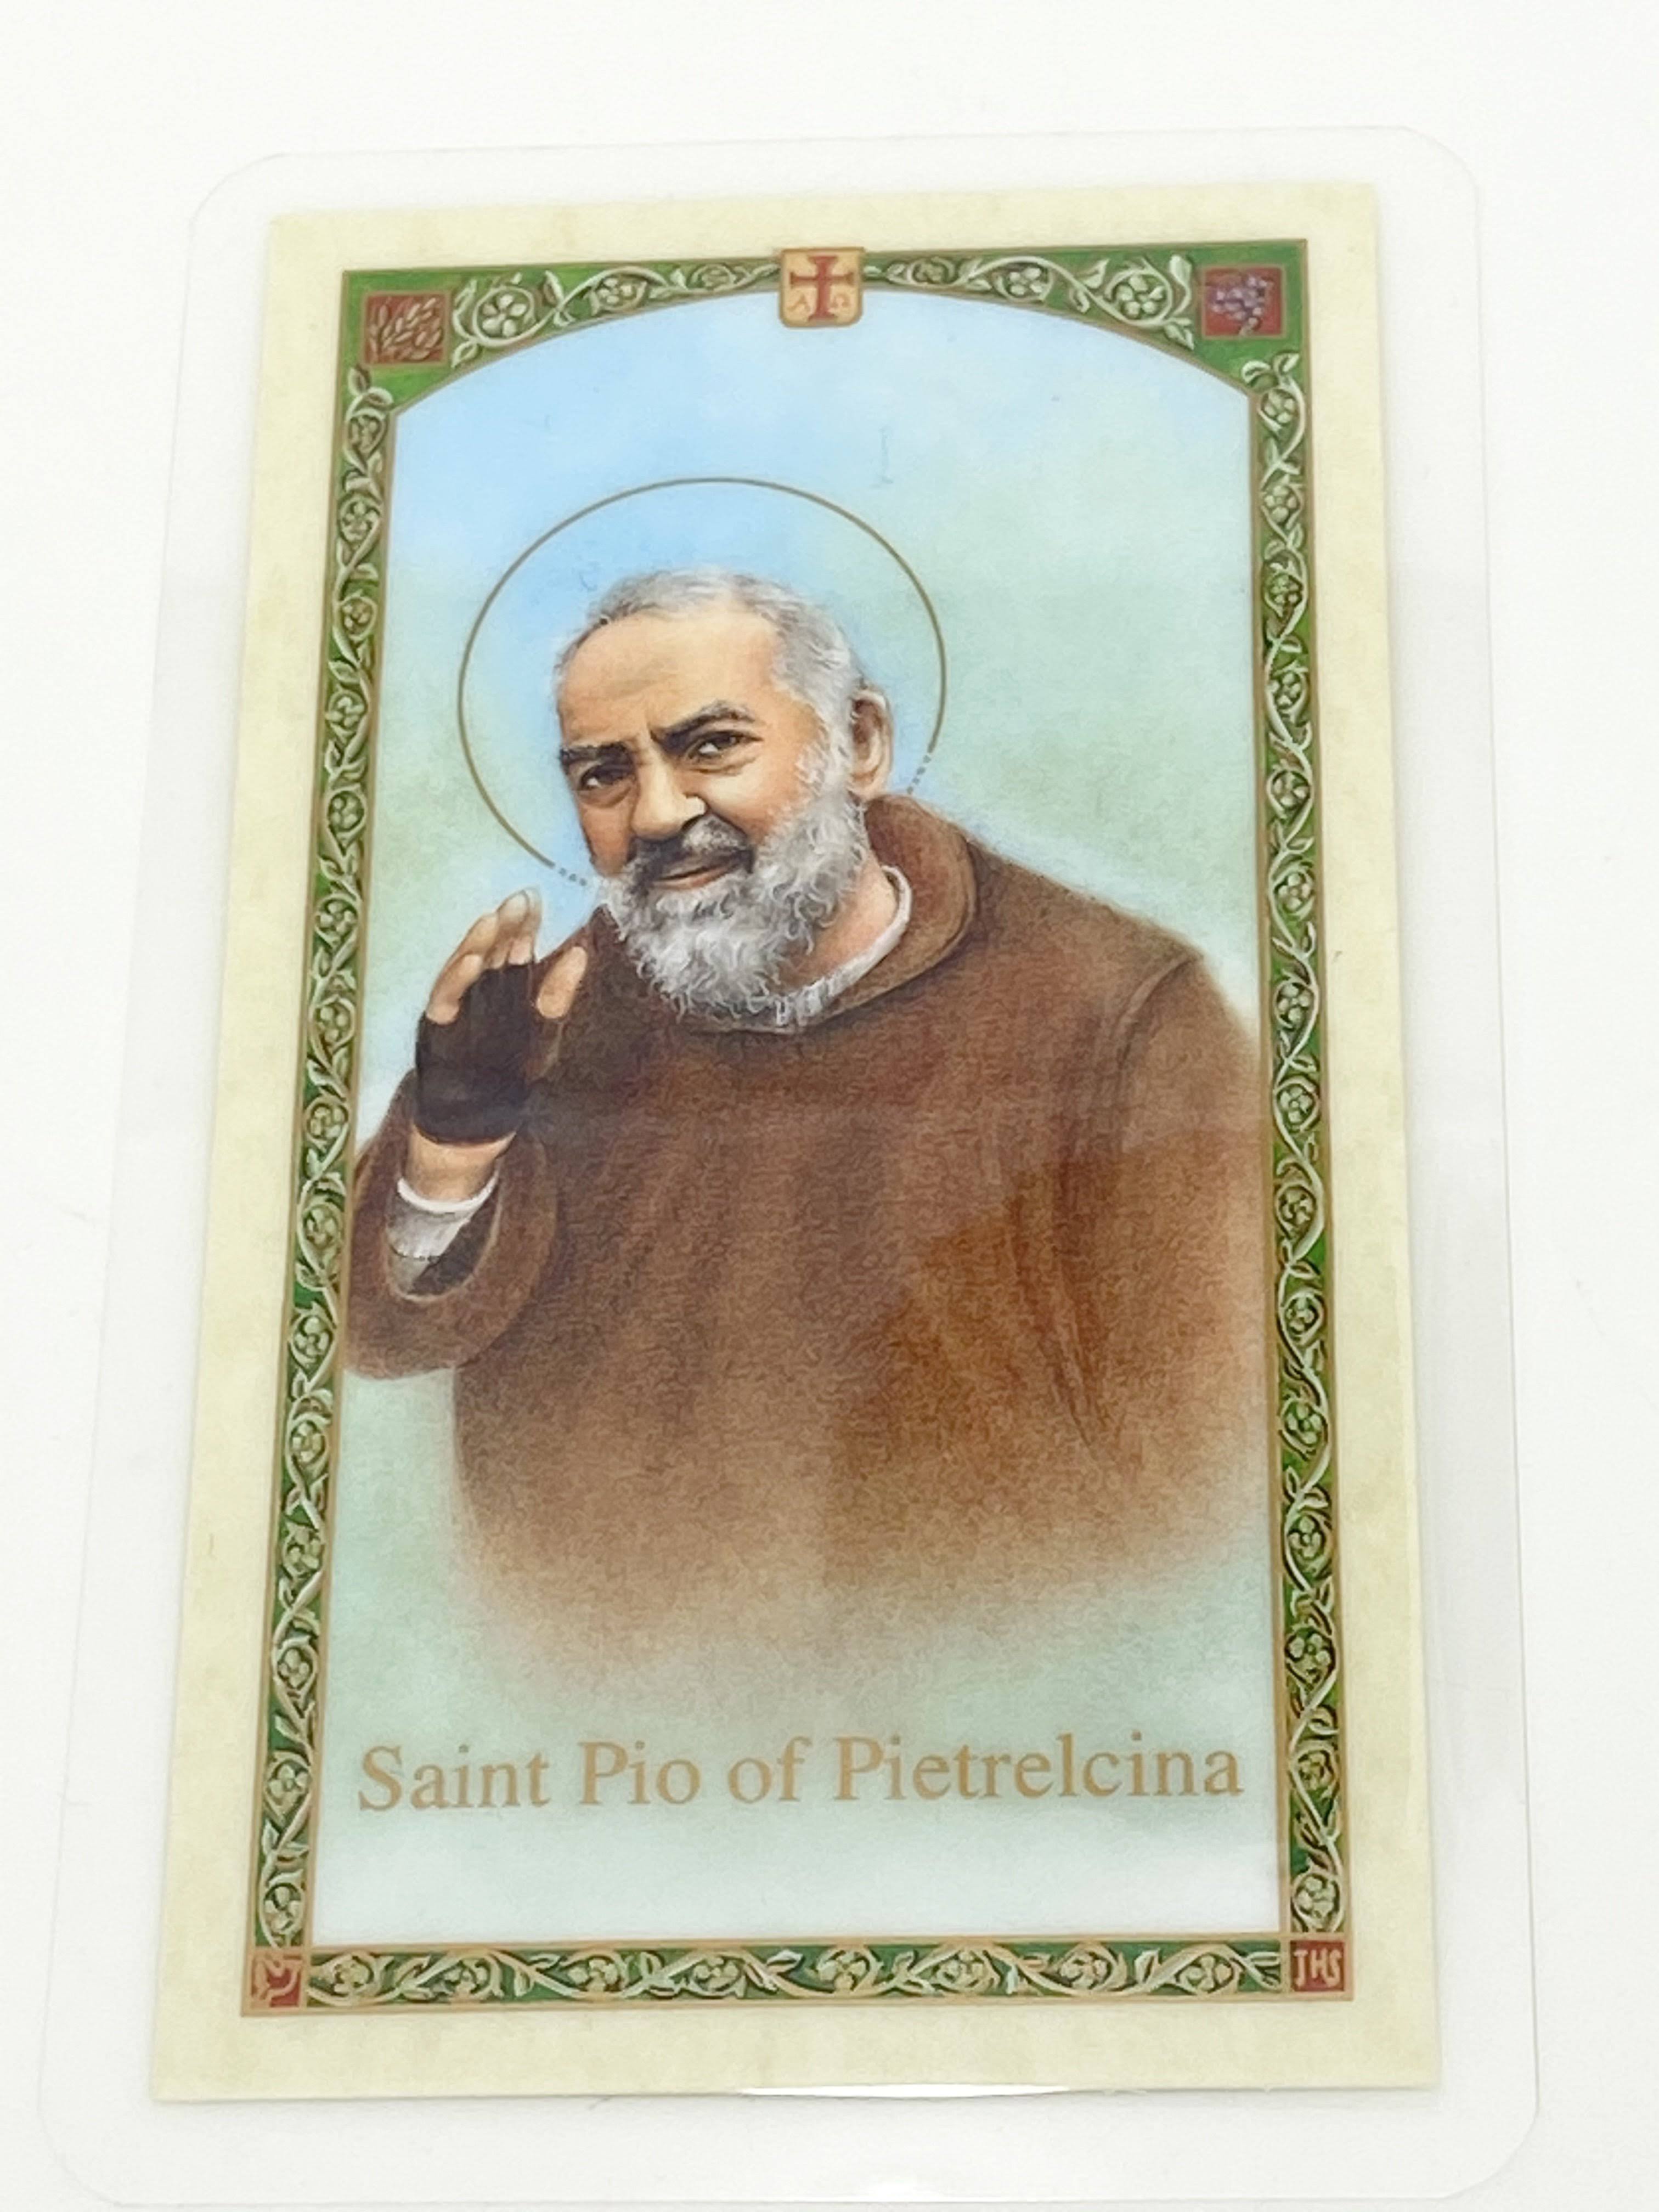 EWTN - Laminated Holy Card - Saint Pio